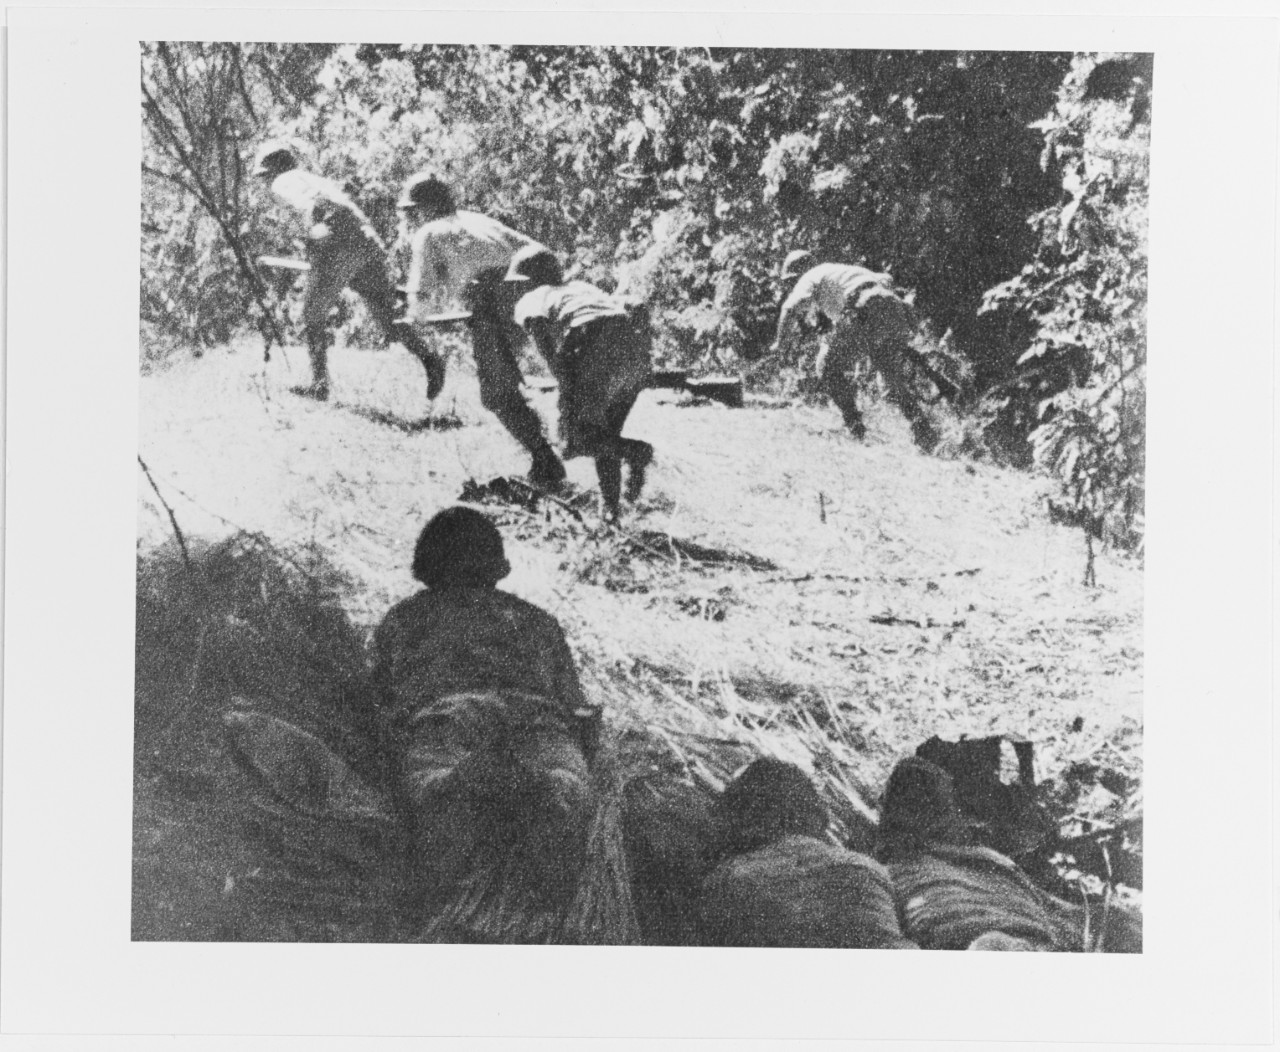 Philippines Invasion, 1941-1942